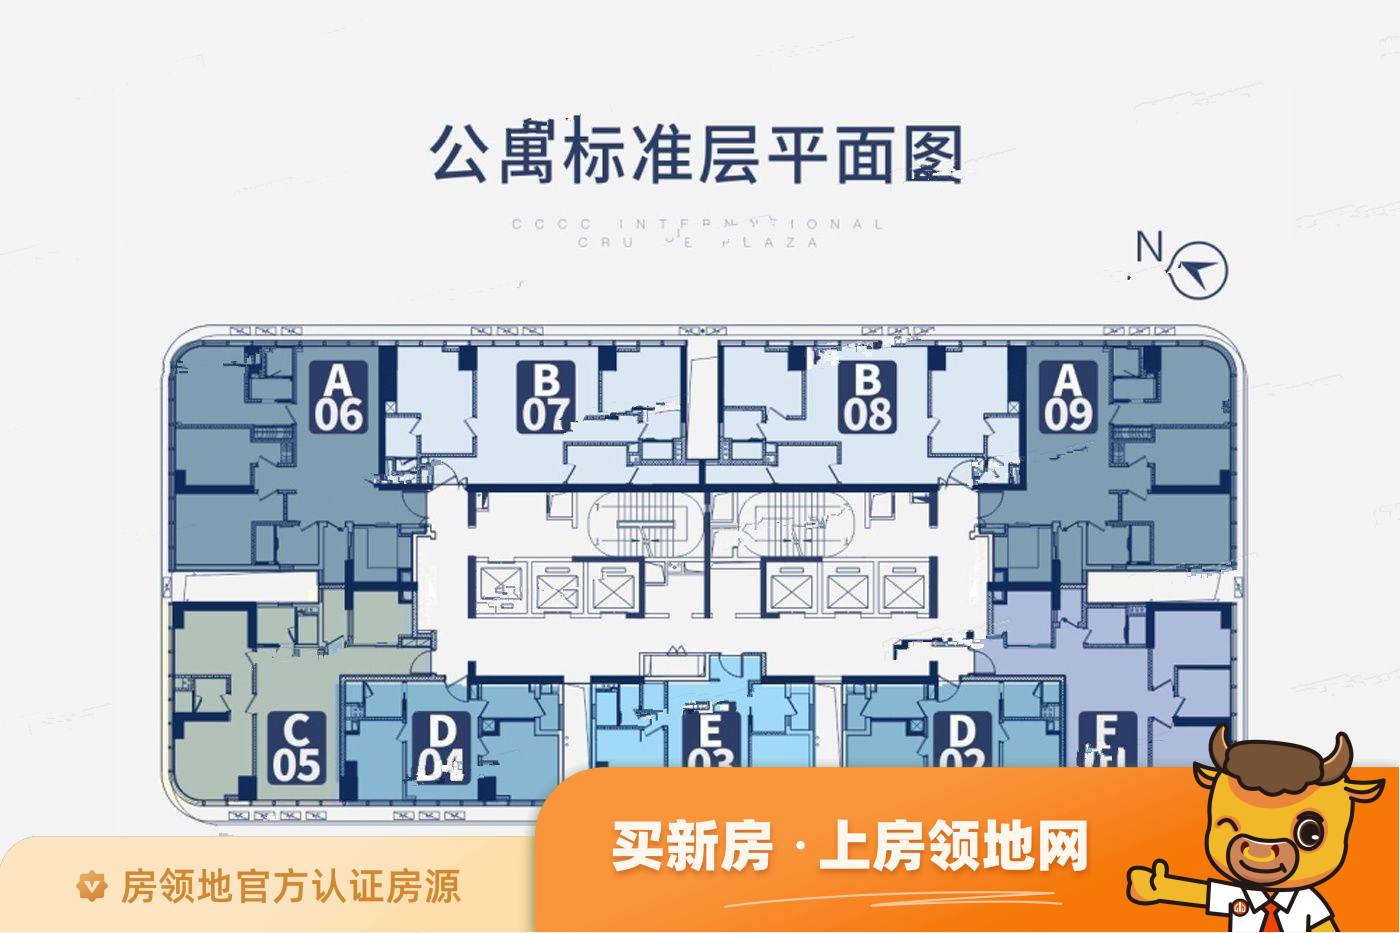 中交国际邮轮广场规划图36